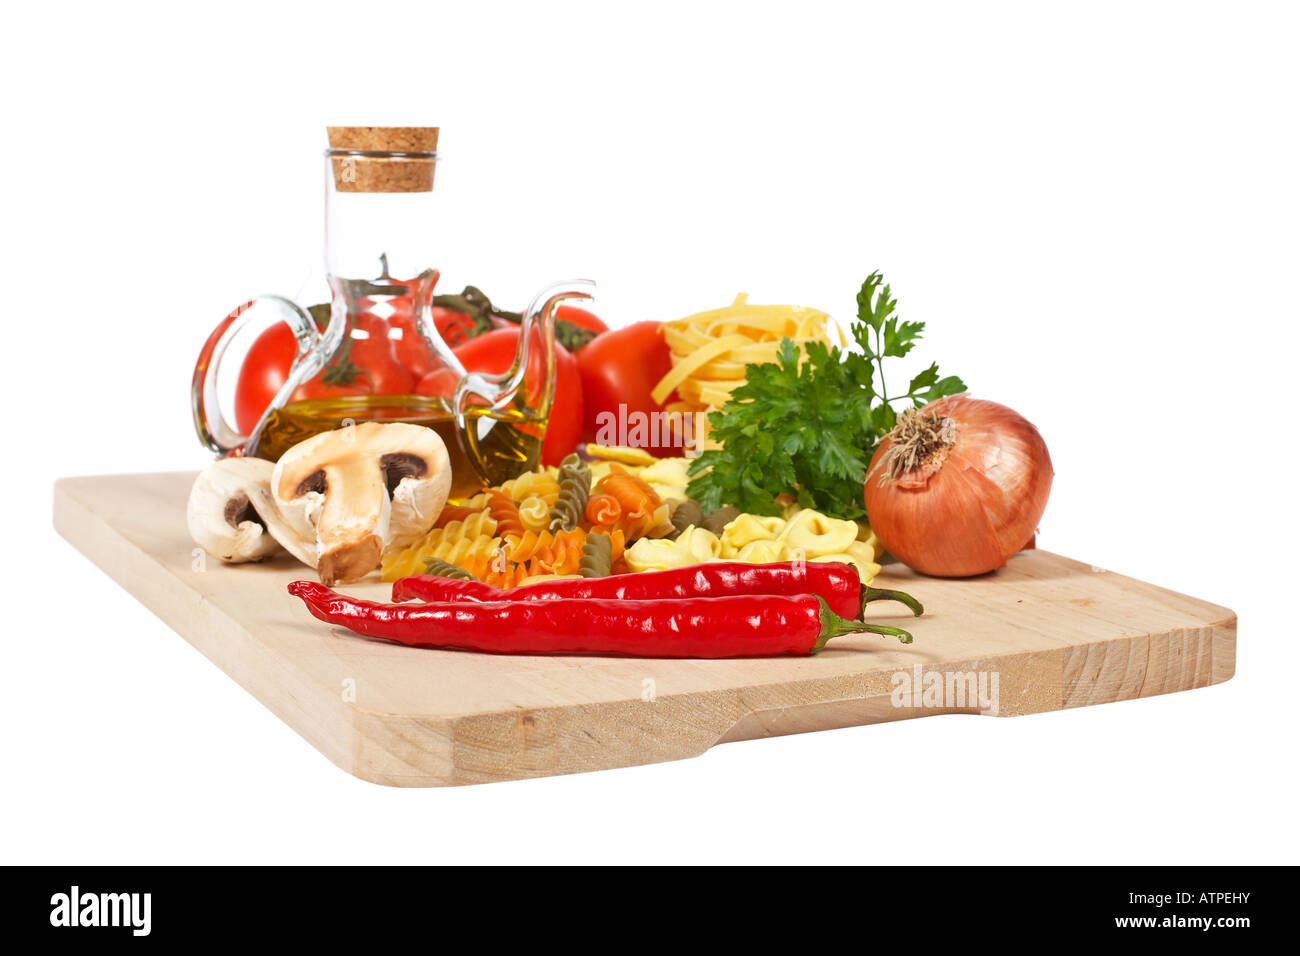 Peperoncino rosso cipolla funghi pomodori prezzemolo olio di oliva aglio e pasta italiana DOF poco profondo Foto Stock